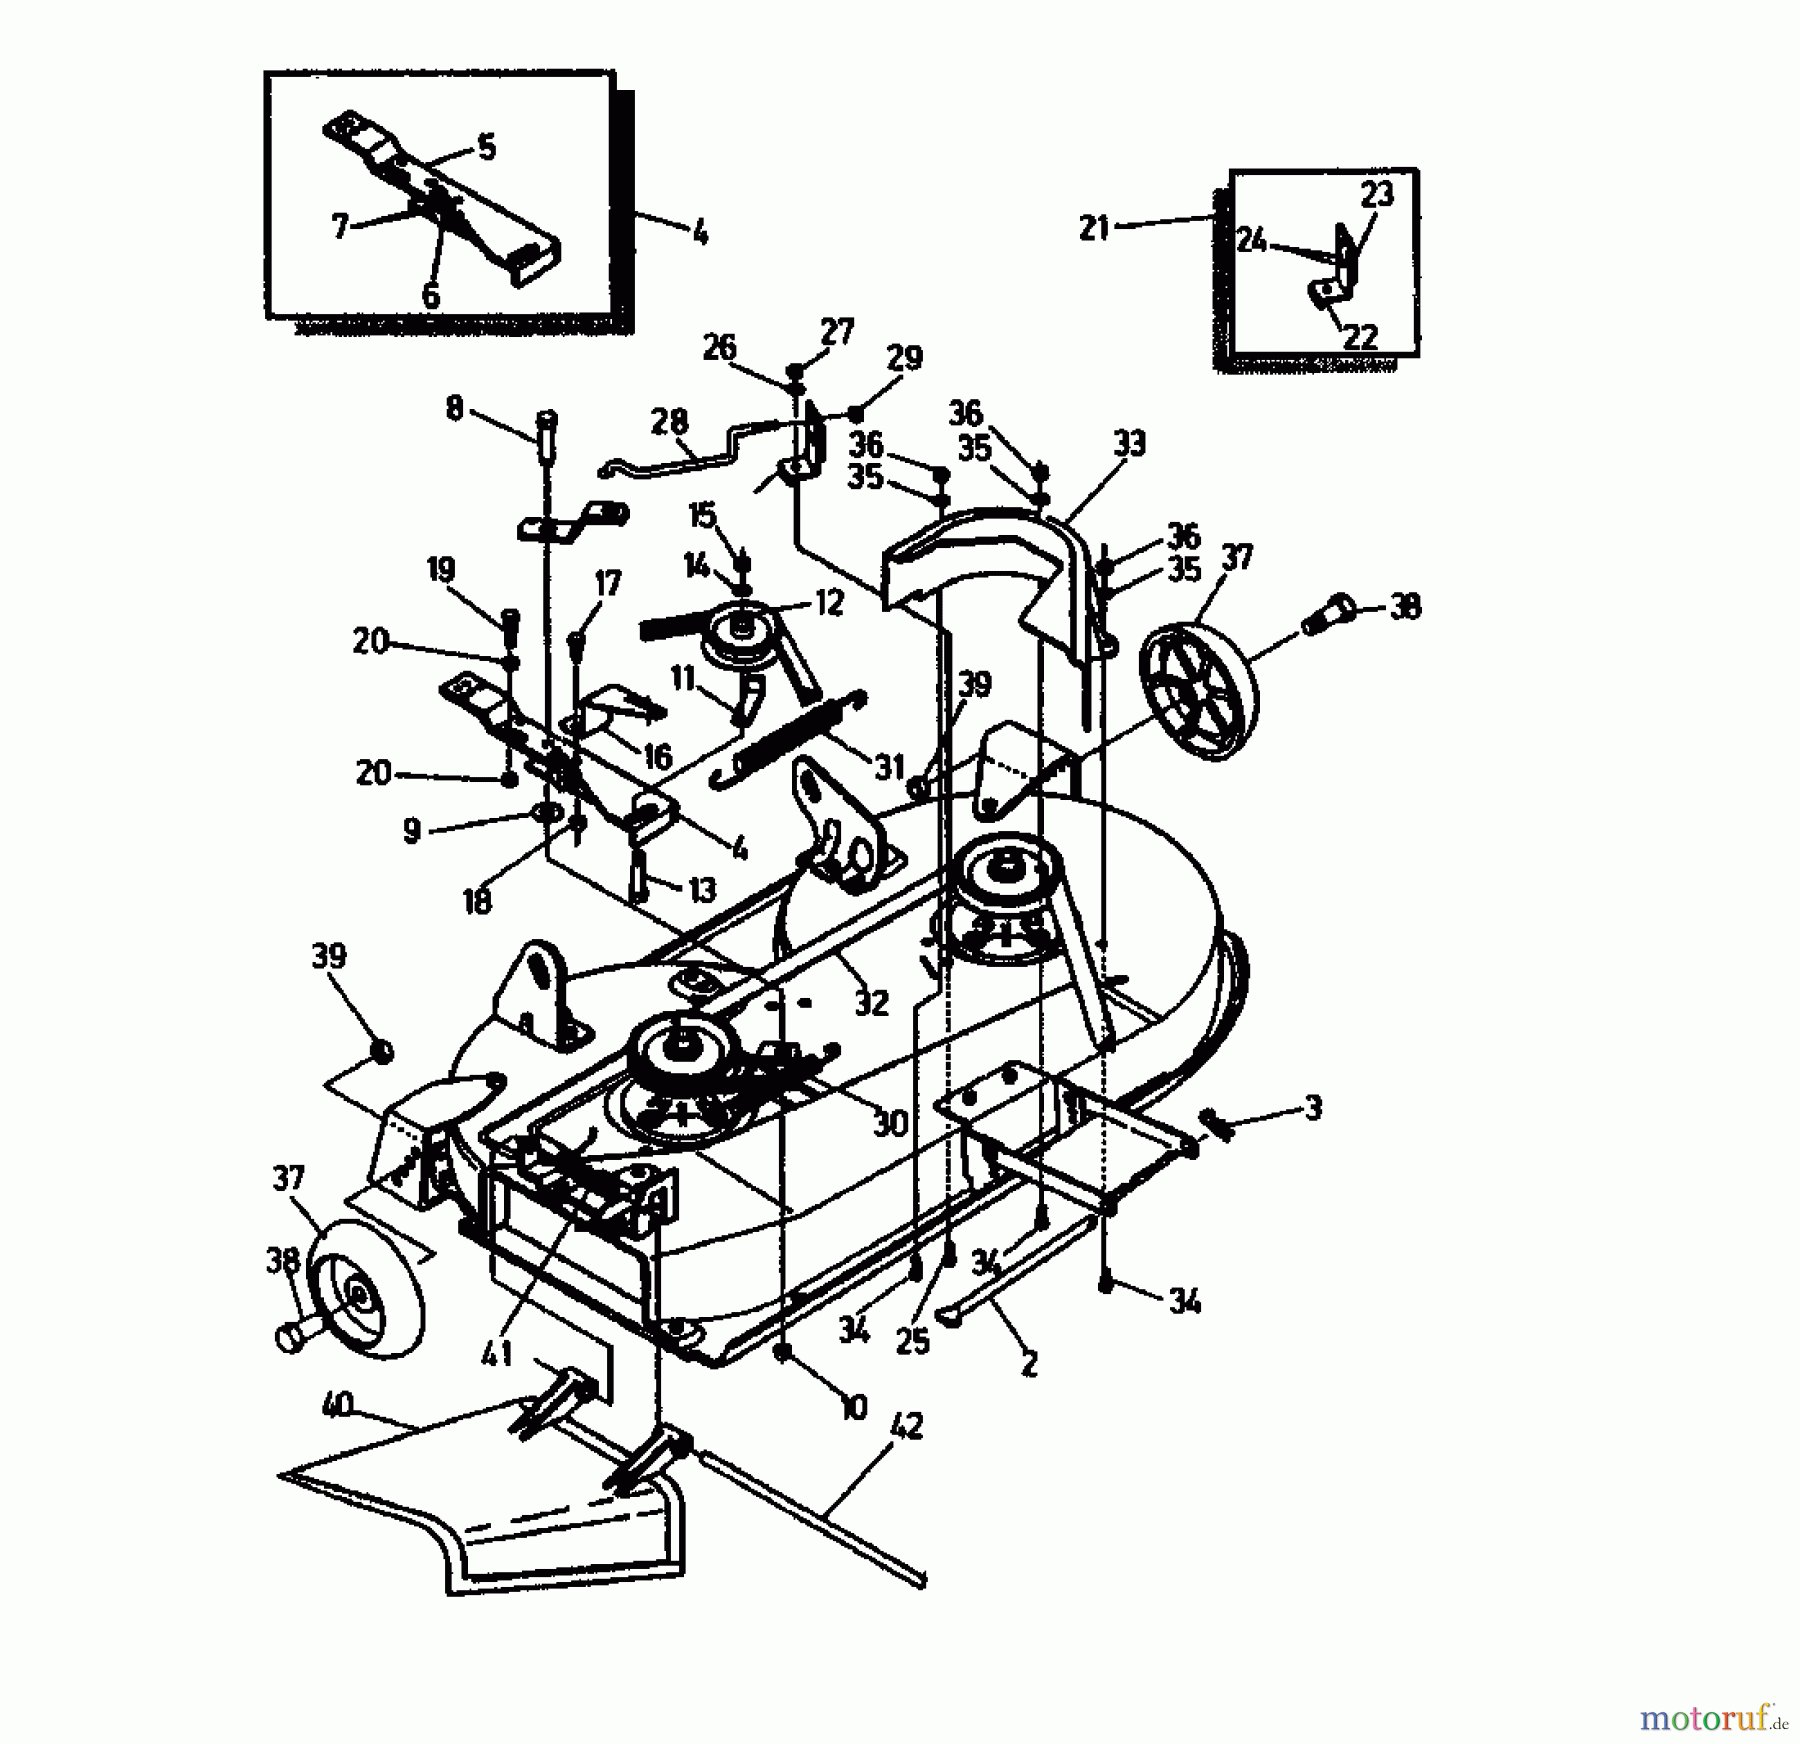  Gutbrod Rasentraktoren RSB 100-12 04015.02  (1991) Mähwerk 100cm